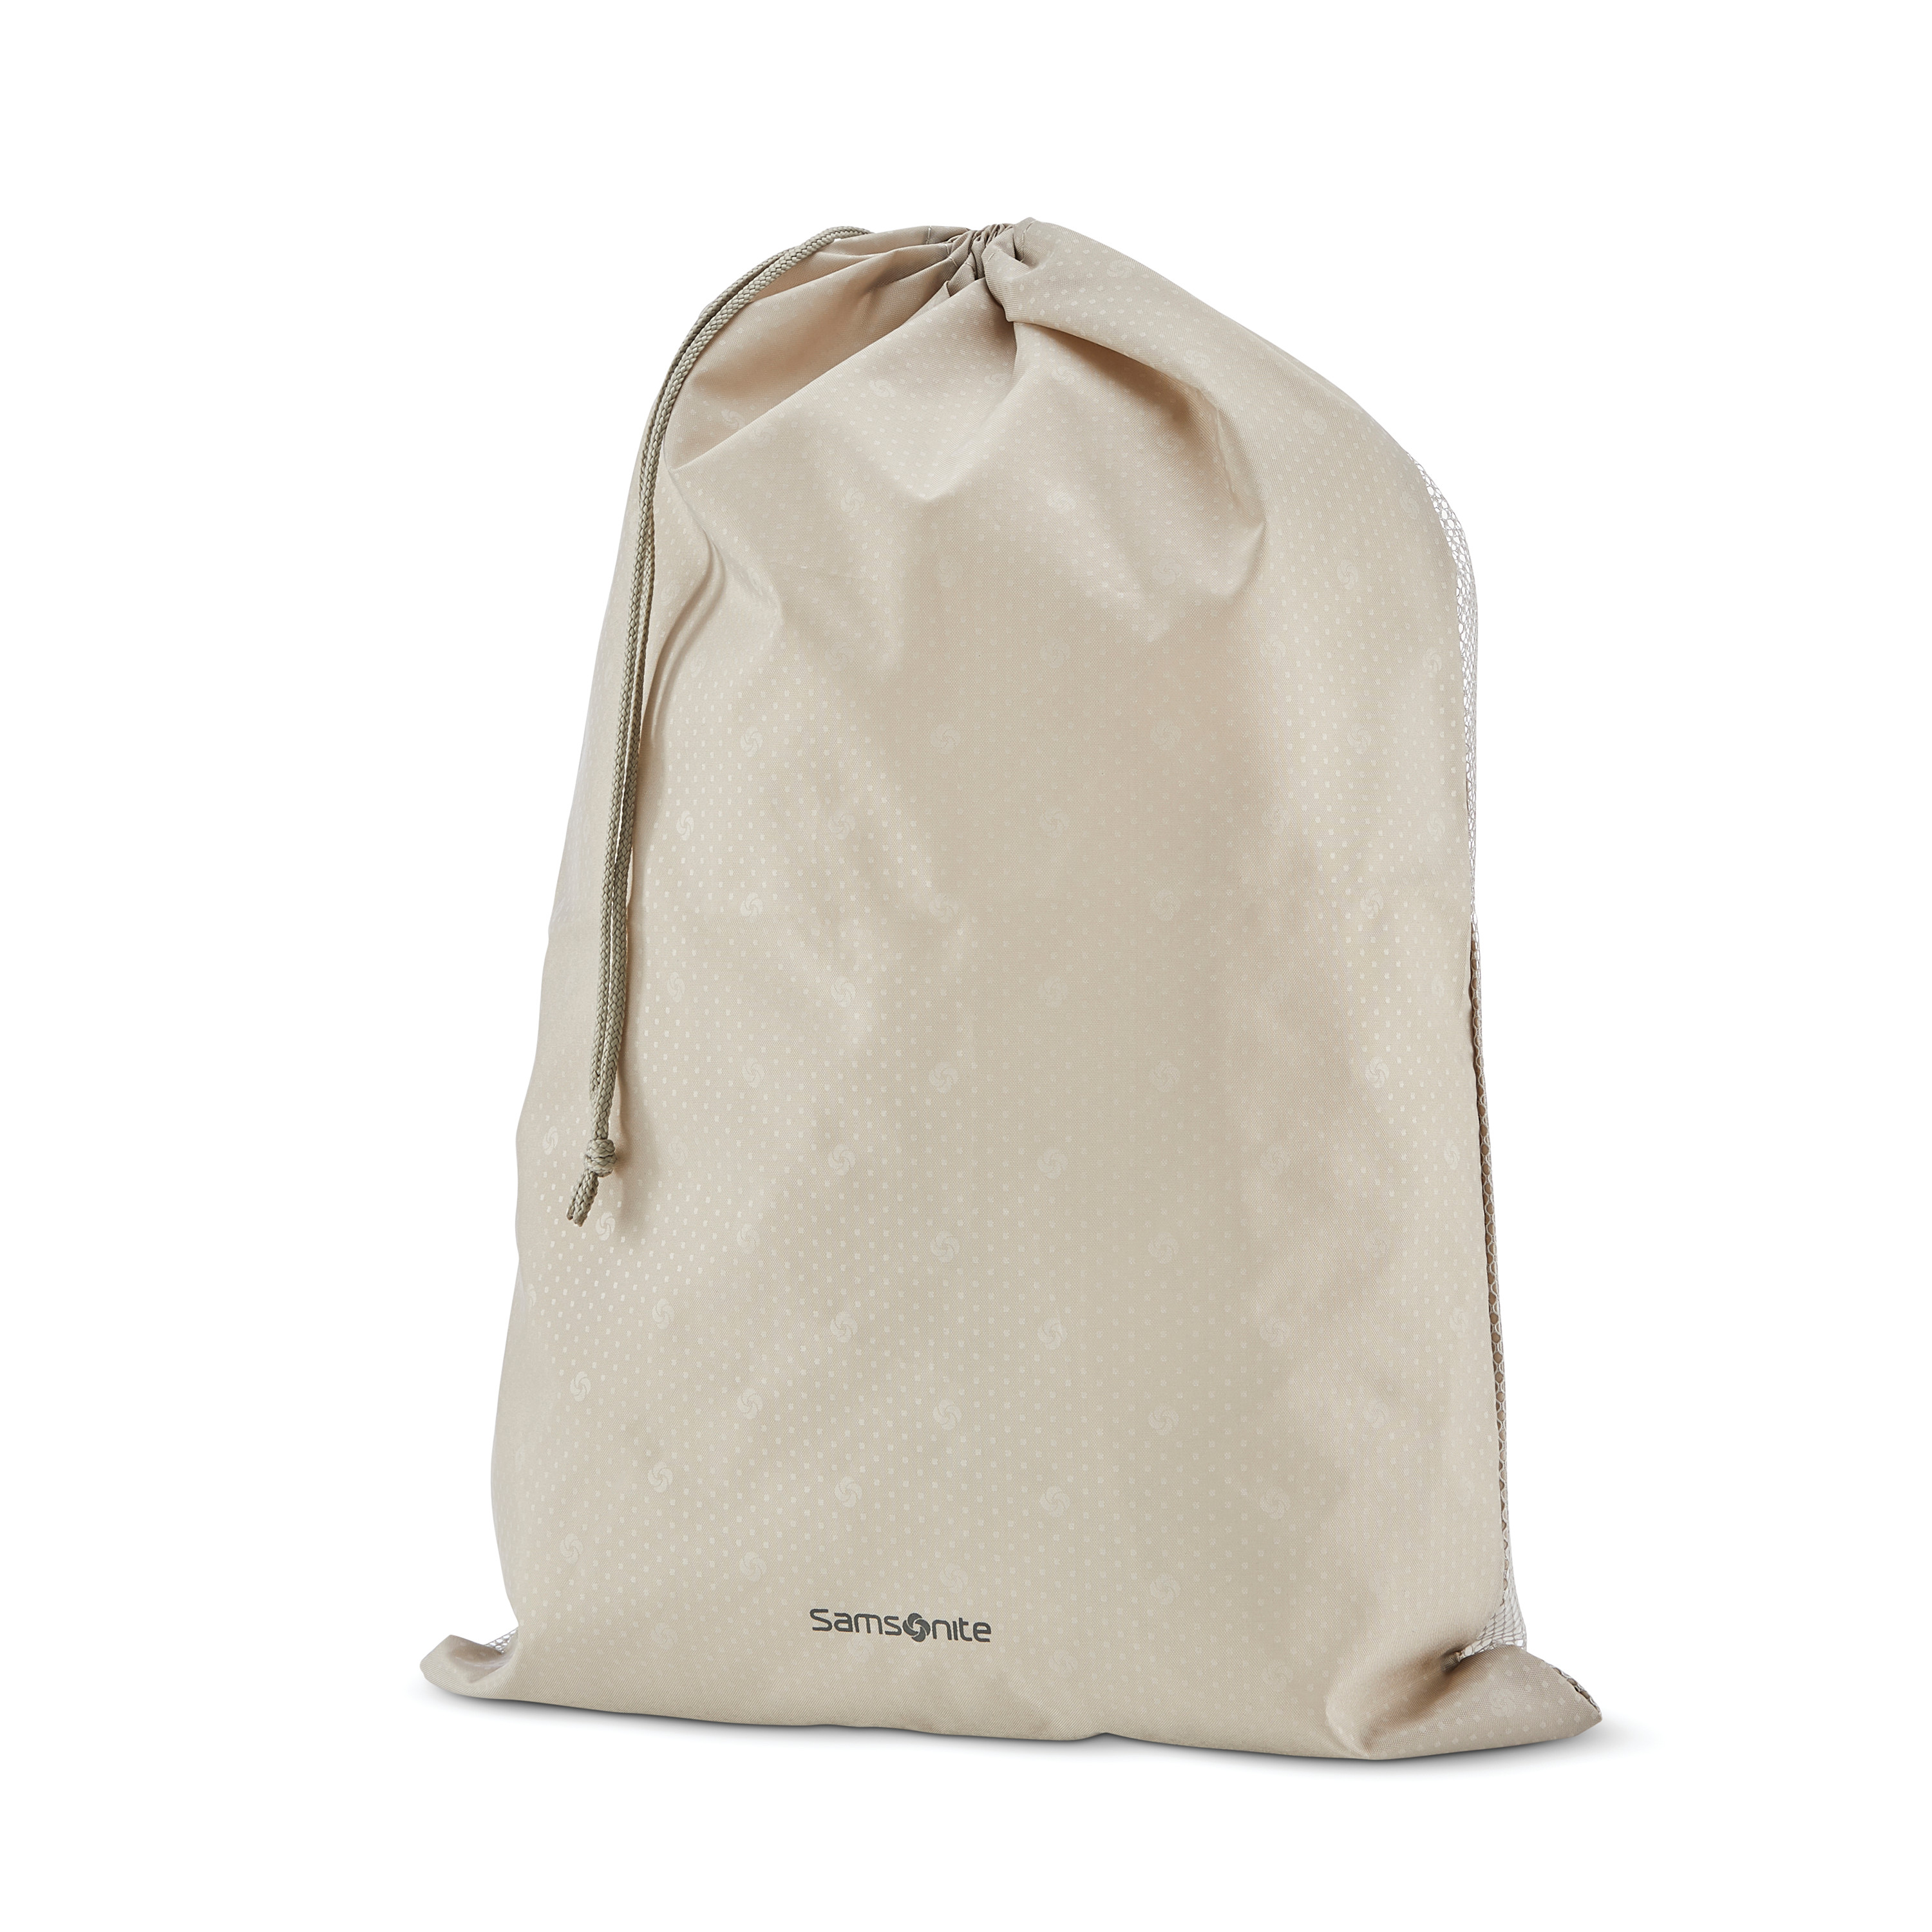 Buy Silhouette 17 Spinner Garment Bag for USD 399.99